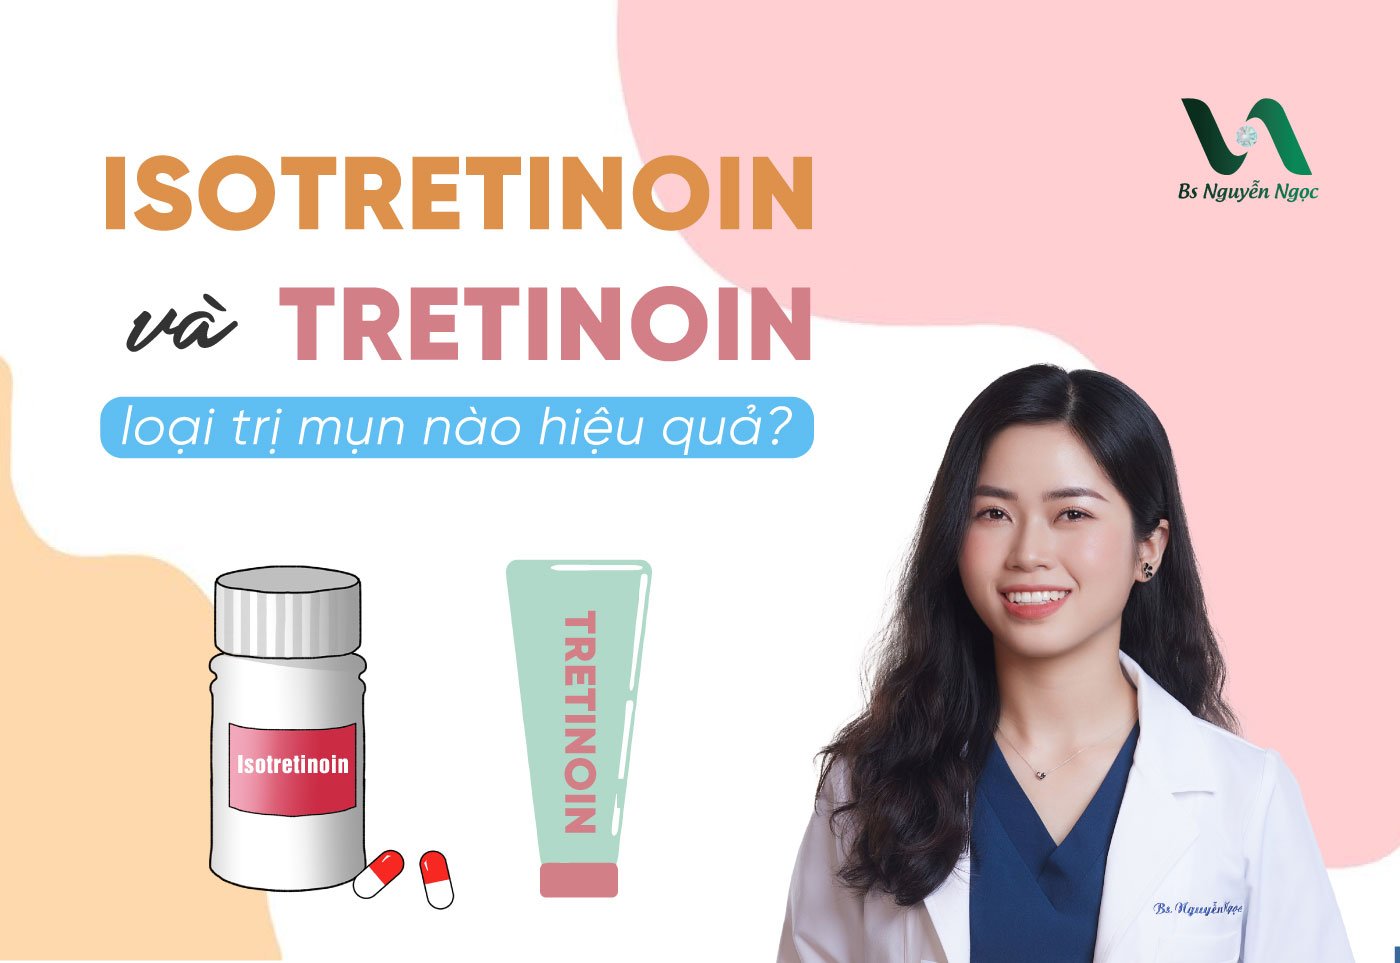 Isotretinoin và Tretinoin nên dùng loại nào trị mụn hiệu quả